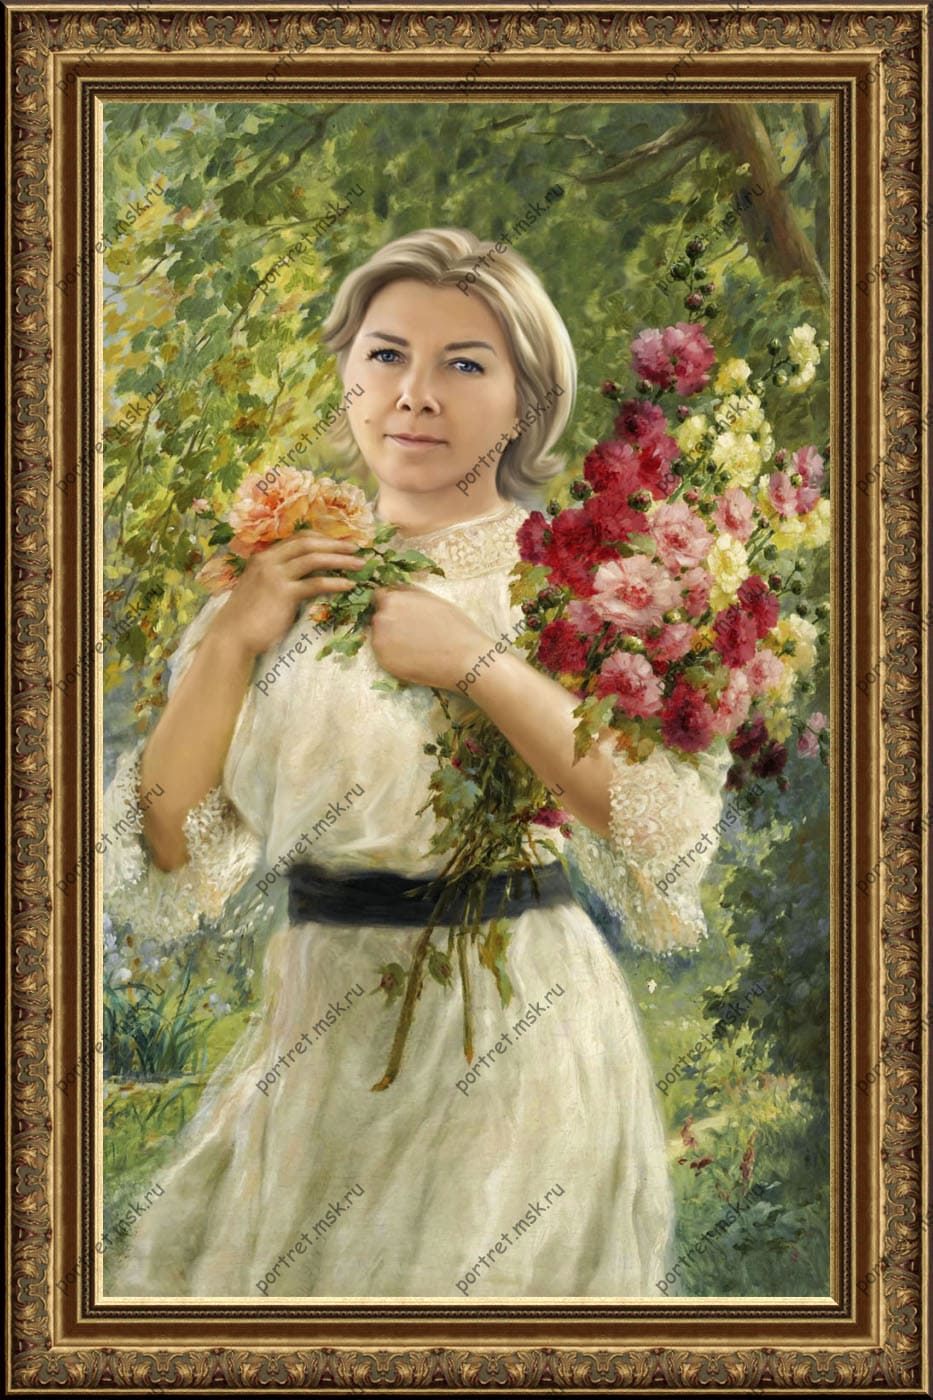 Портрет маслом на заказ. По фото на холсте от компании Portret.msk.ru Авторская работа. Музейное качество. Тел: 8(965)1966366 (WhatsApp & Viber).